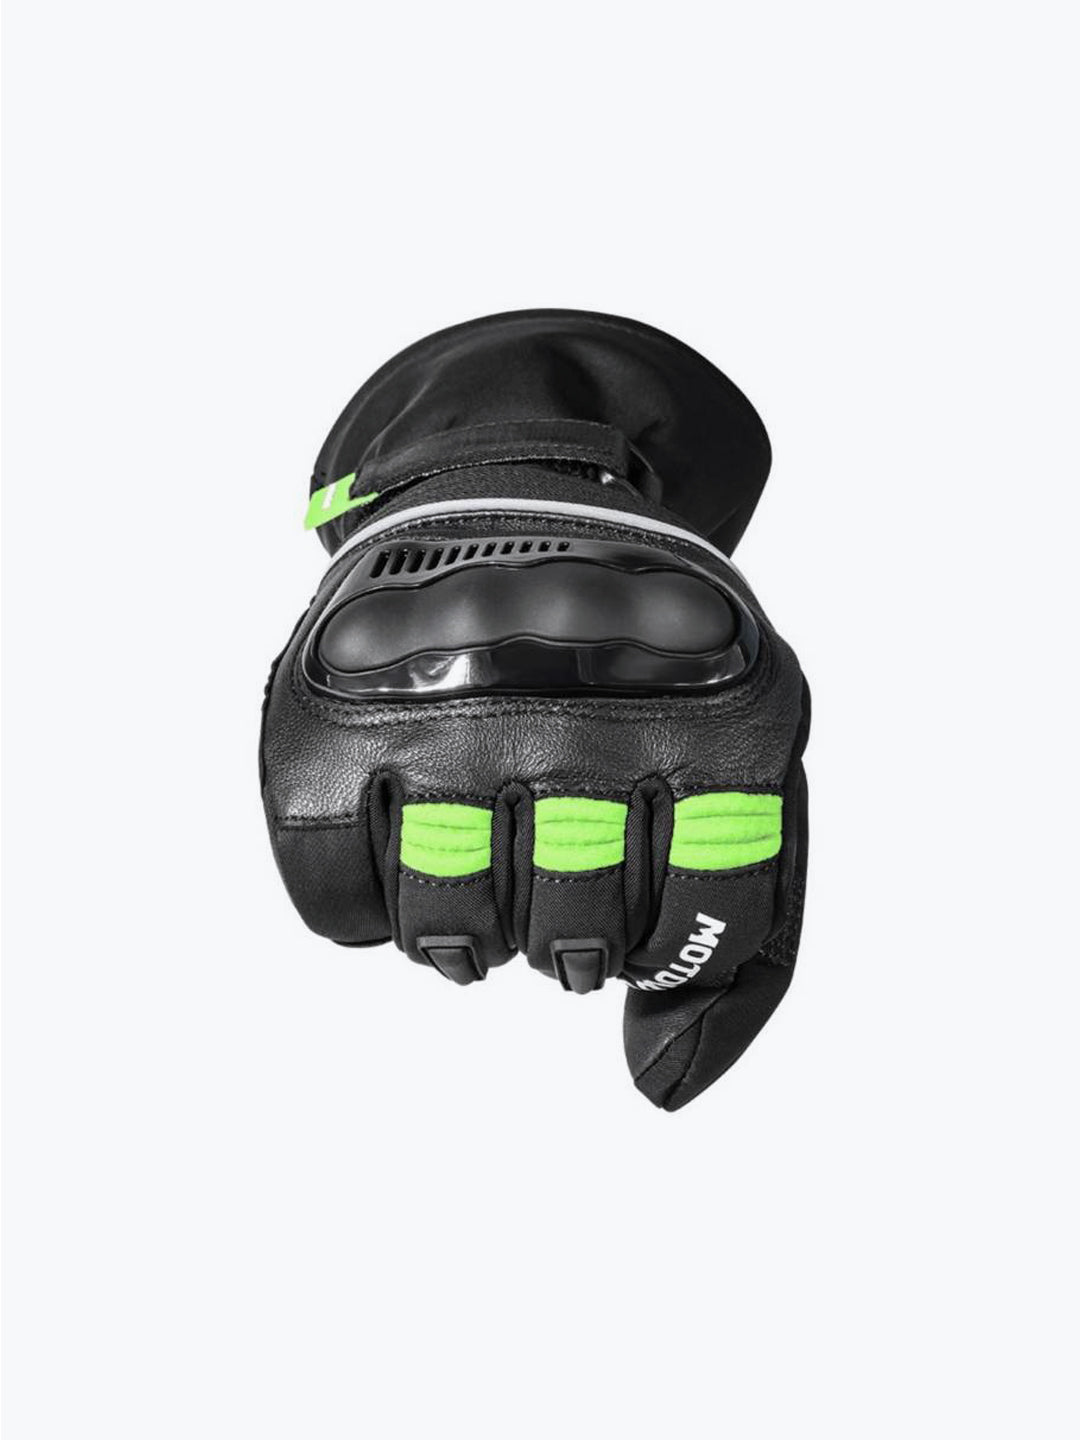 Motowolf Gloves Black Green 0318